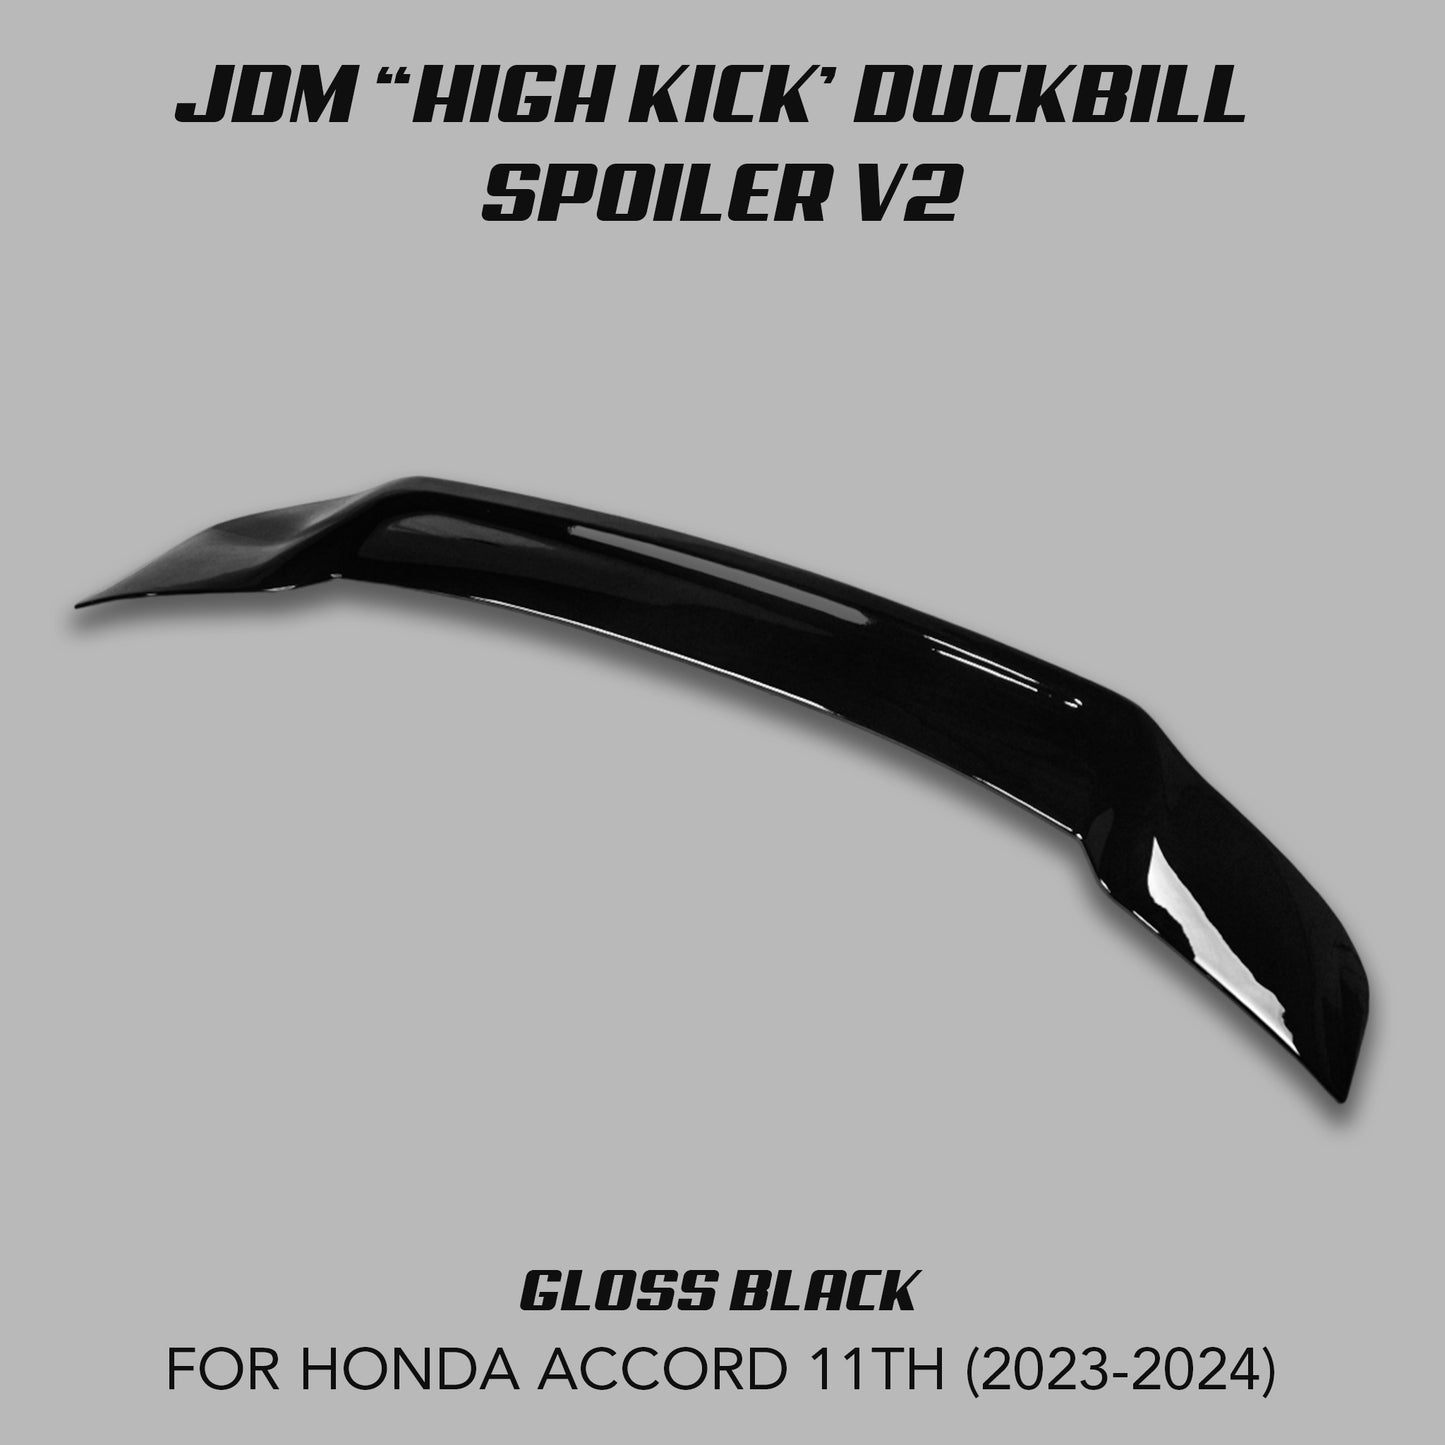 [ACCORD 11TH] JDM "HIGH KICK" DUCKBILL SPOILER V2